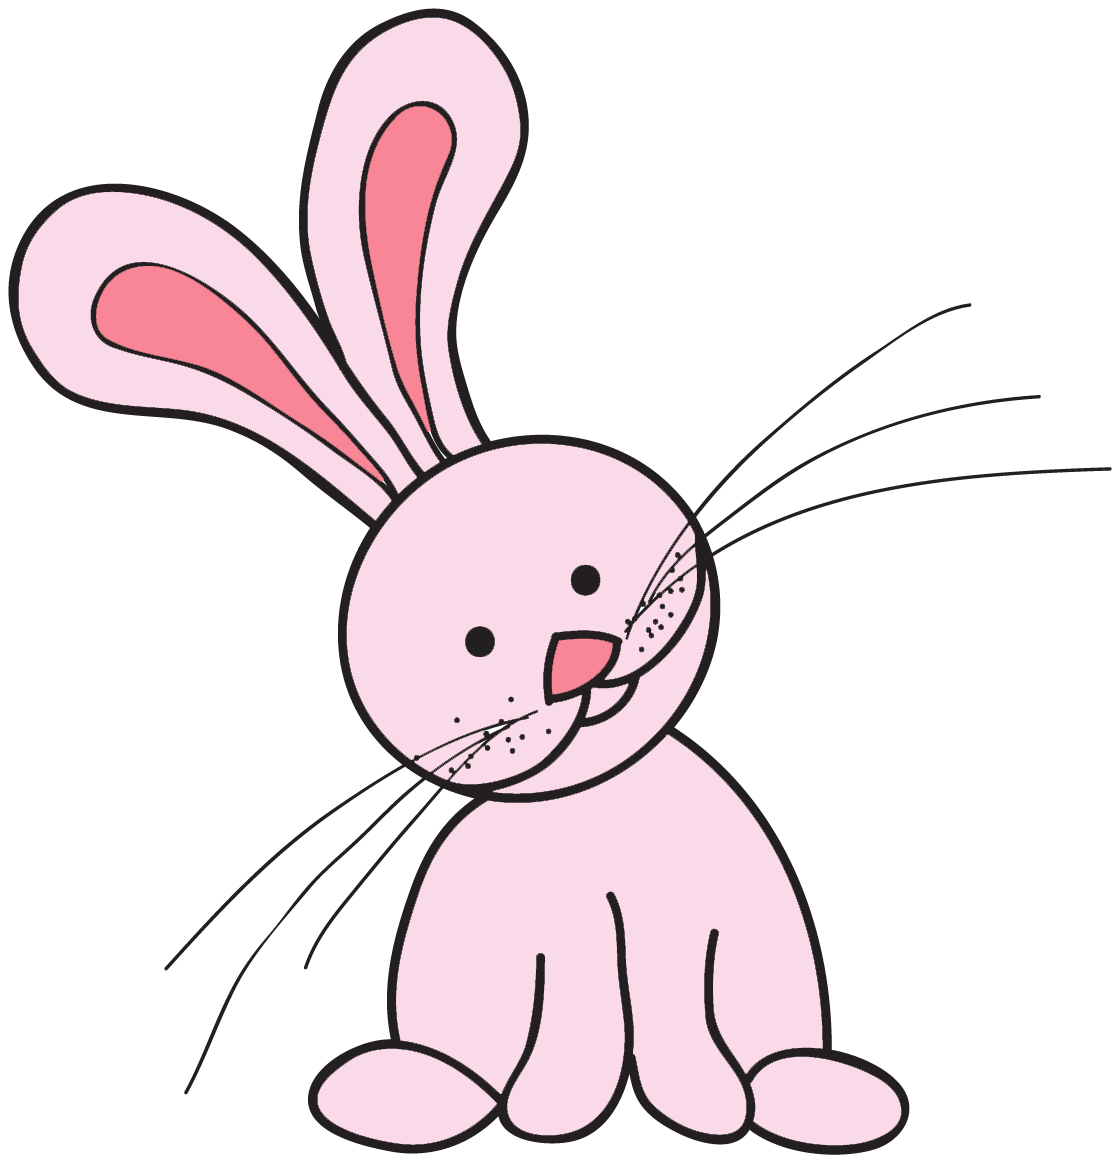 Cartoon Rabbit Images | Free Download Clip Art | Free Clip Art ...